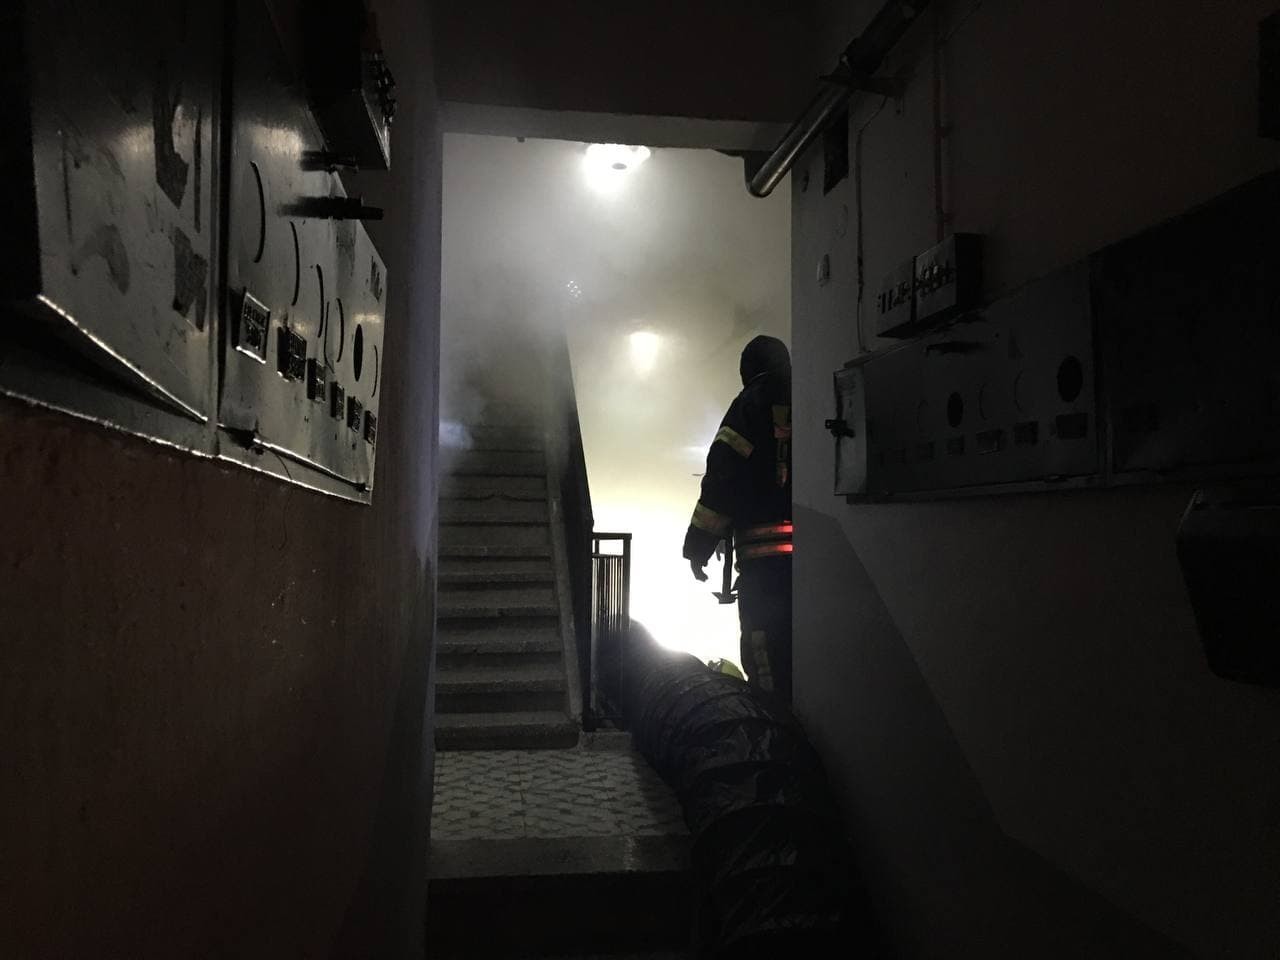 Apartmanı kaplayan yoğun duman vatandaşları sokağa döktü #aydin